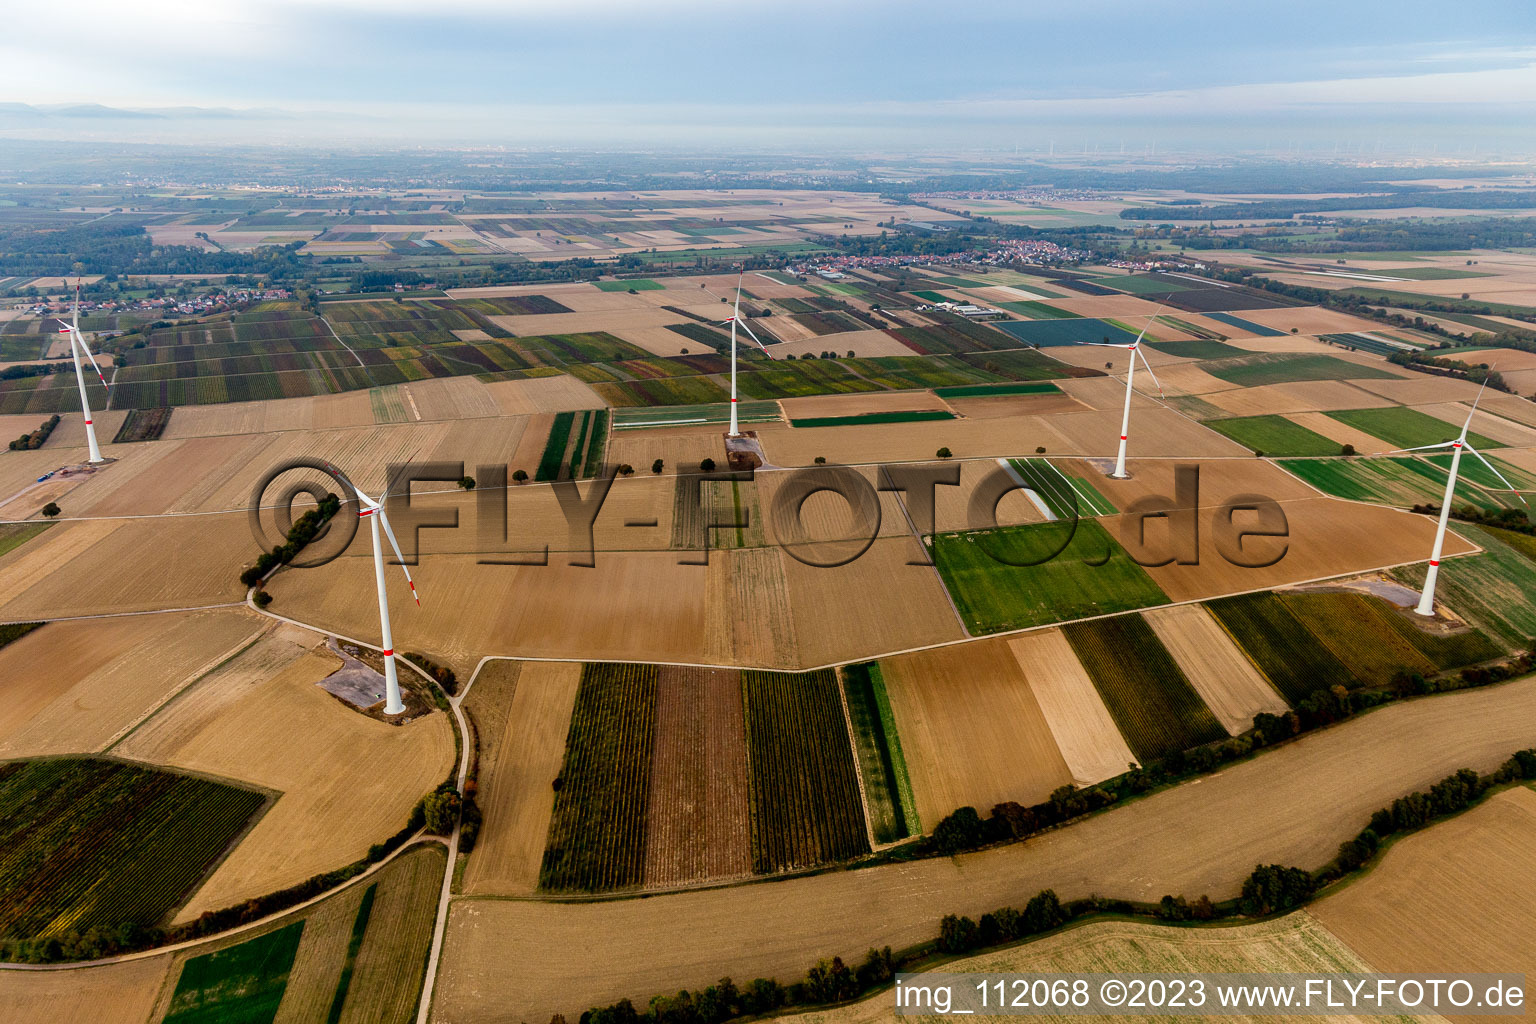 Parc éolien EnBW - éolienne avec 6 éoliennes à Freckenfeld dans le département Rhénanie-Palatinat, Allemagne vue d'en haut